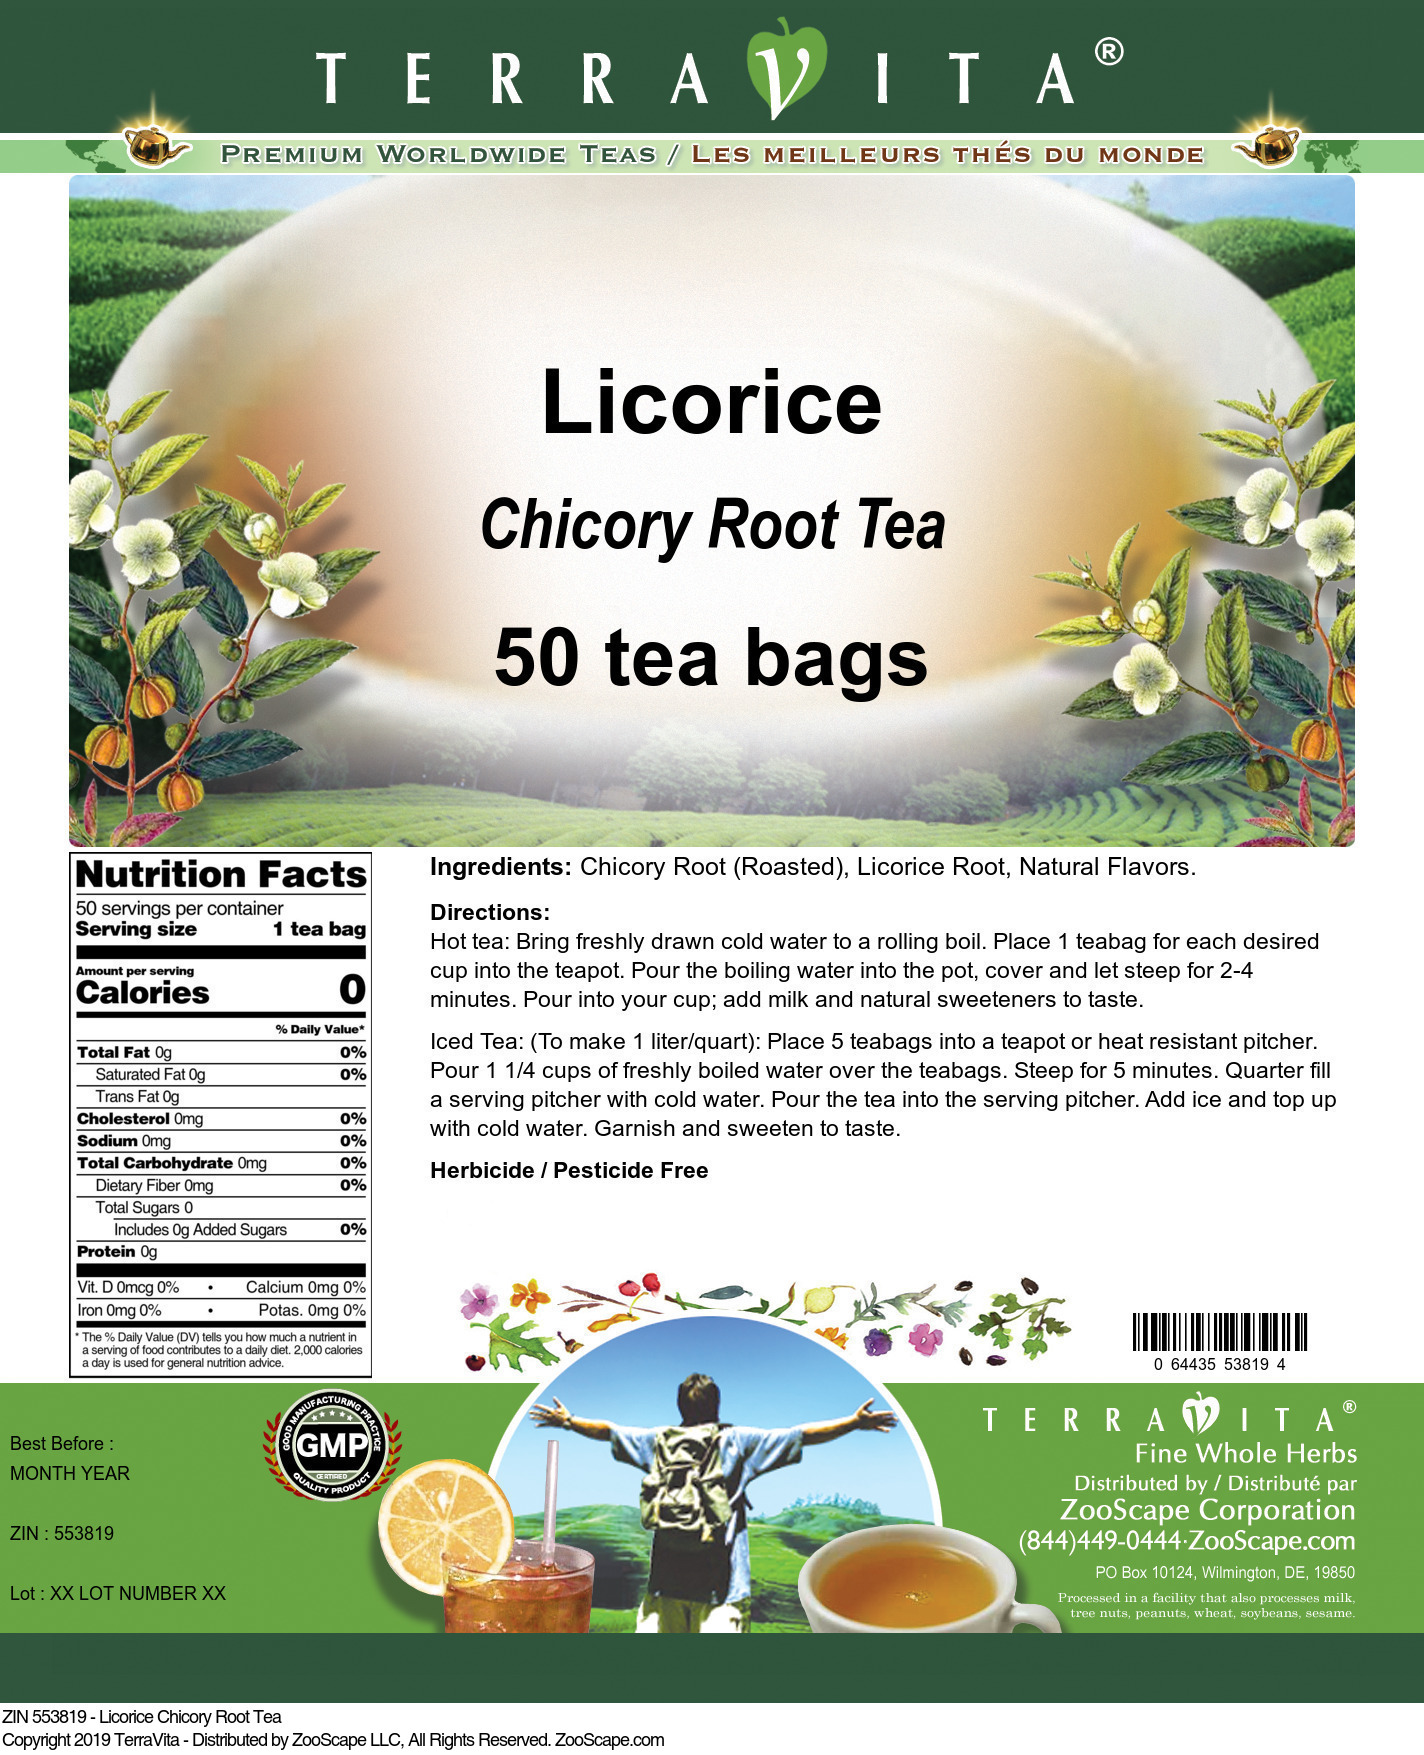 Licorice Chicory Root Tea - Label